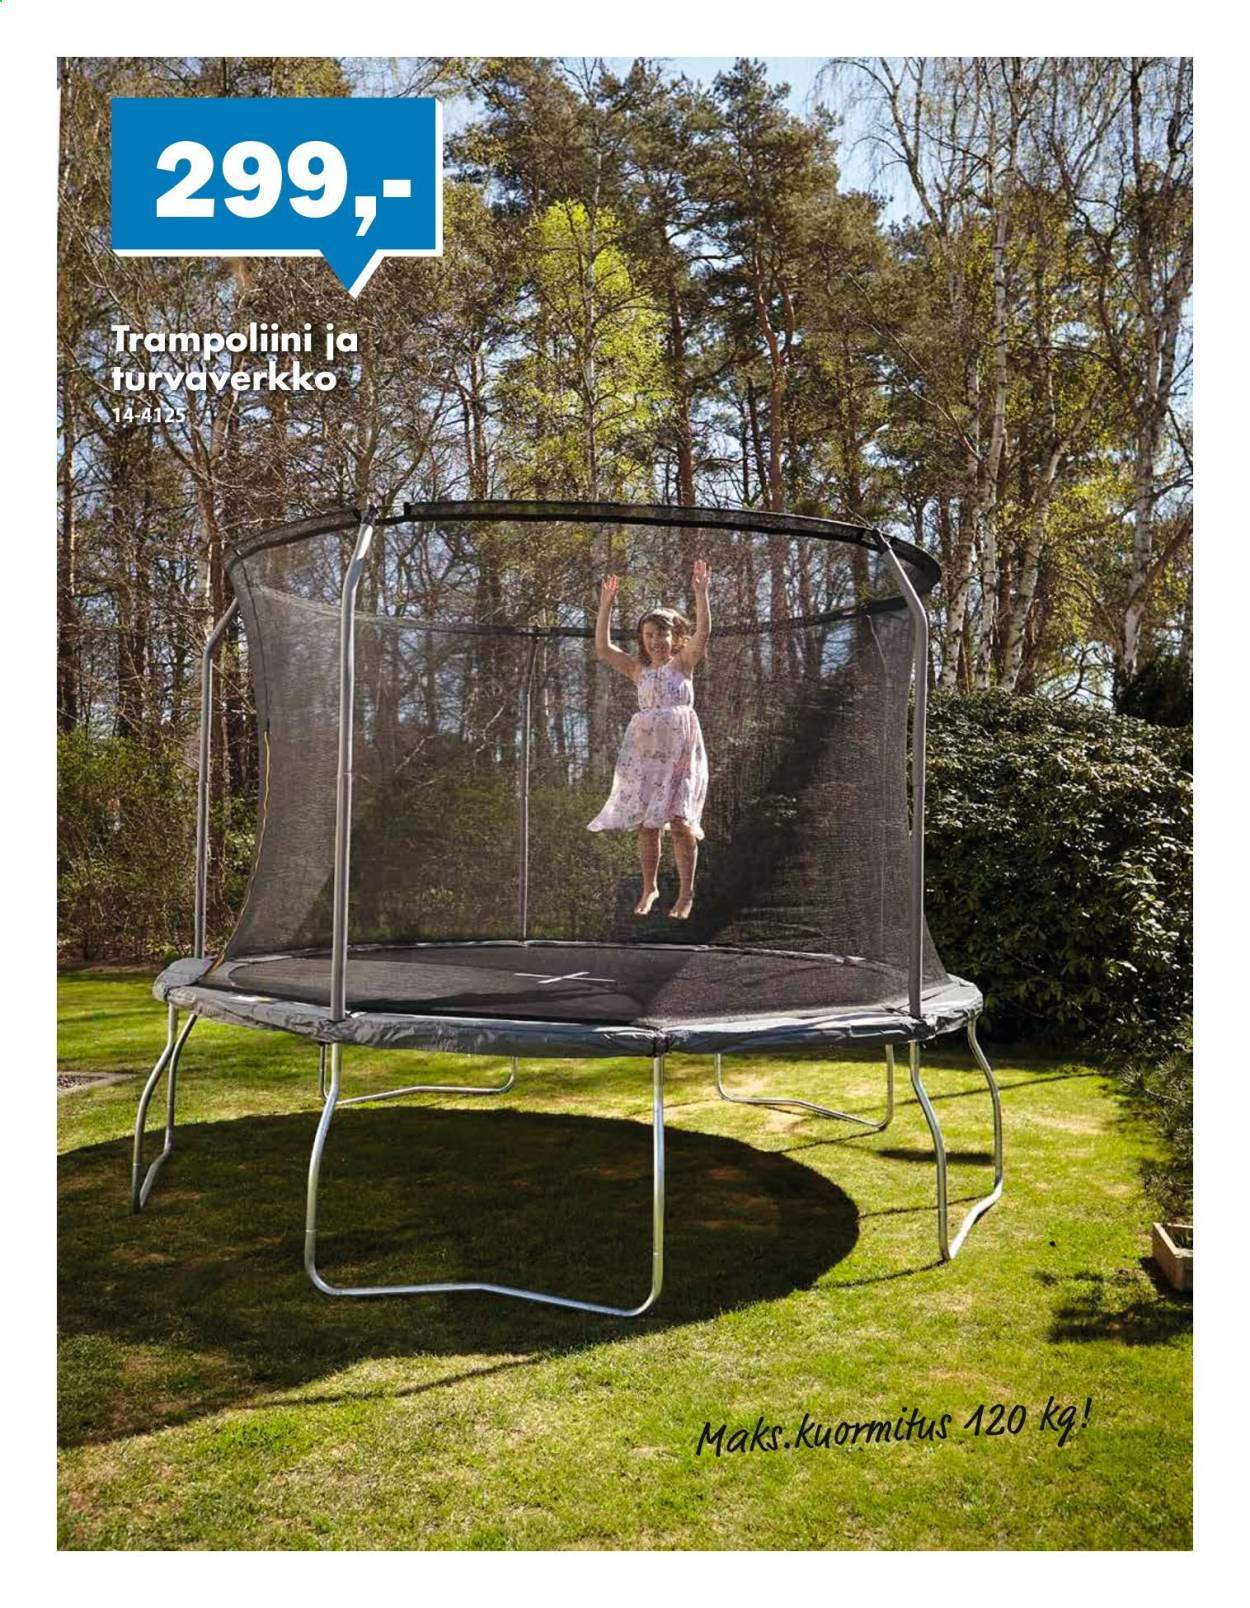 thumbnail - Biltema tarjoukset  - 31.03.2021 - 04.04.2021 - Tarjoustuotteet - trampoliini. Sivu 2.